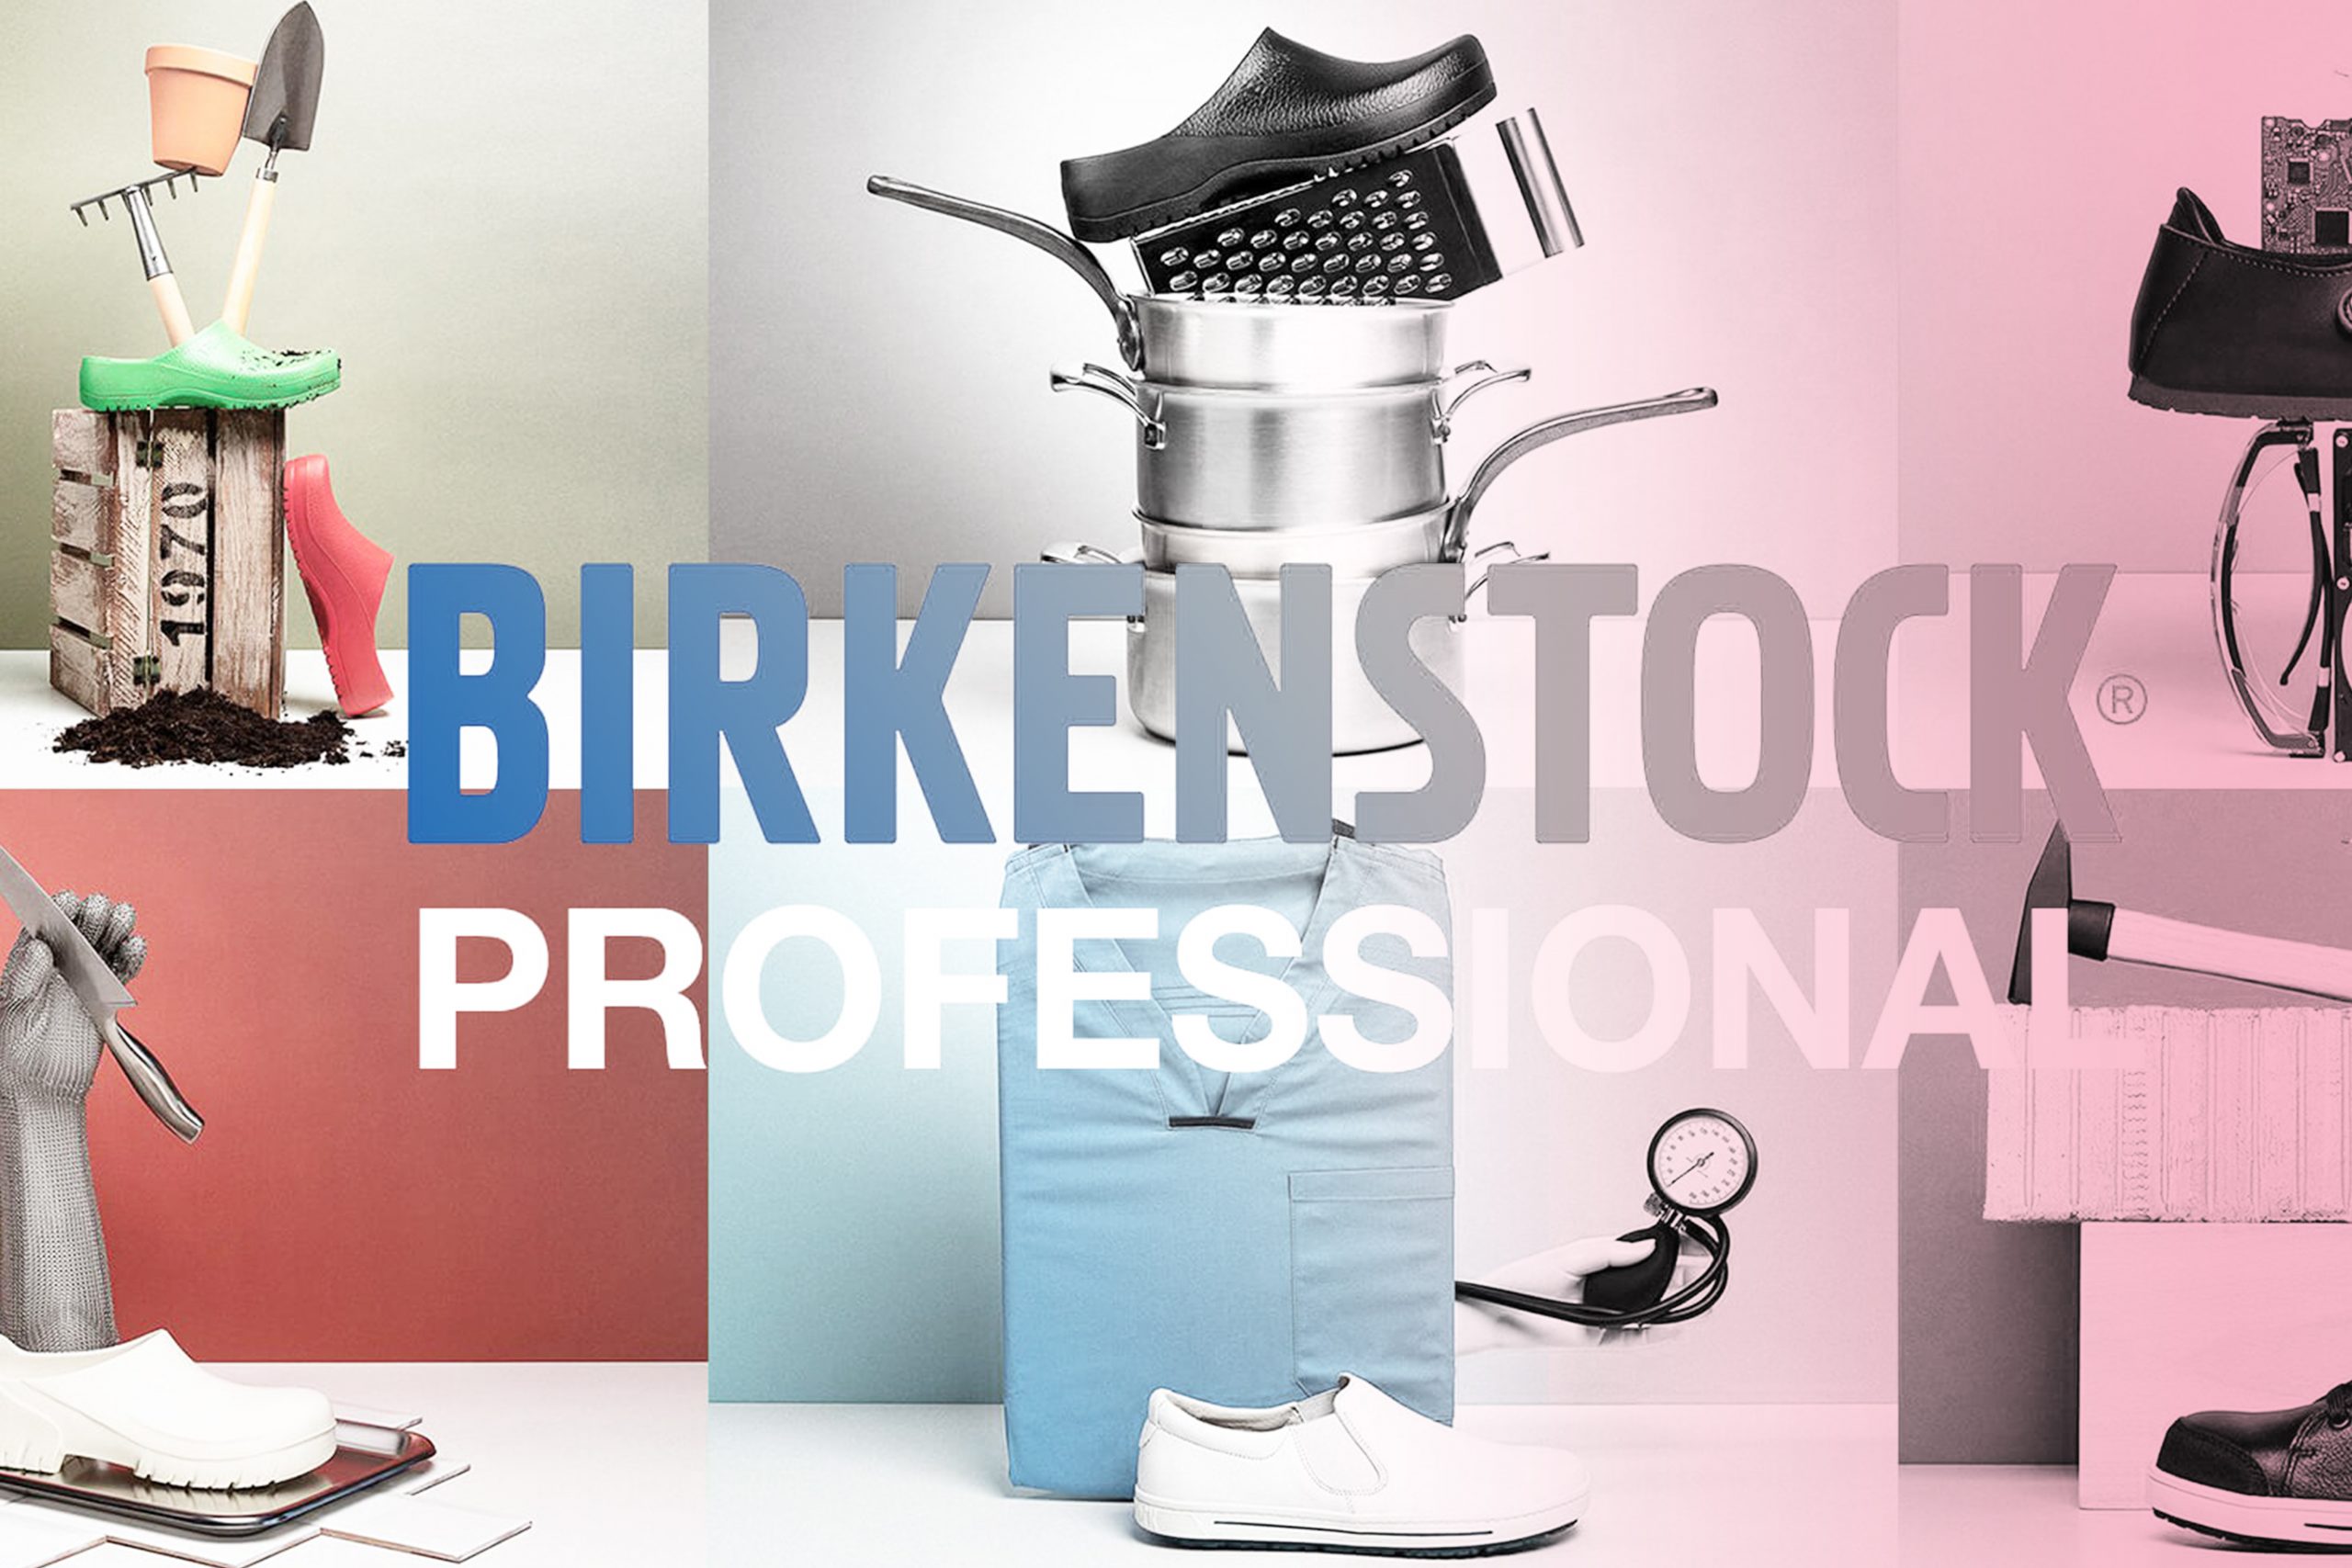 Birkenstock professional footwear